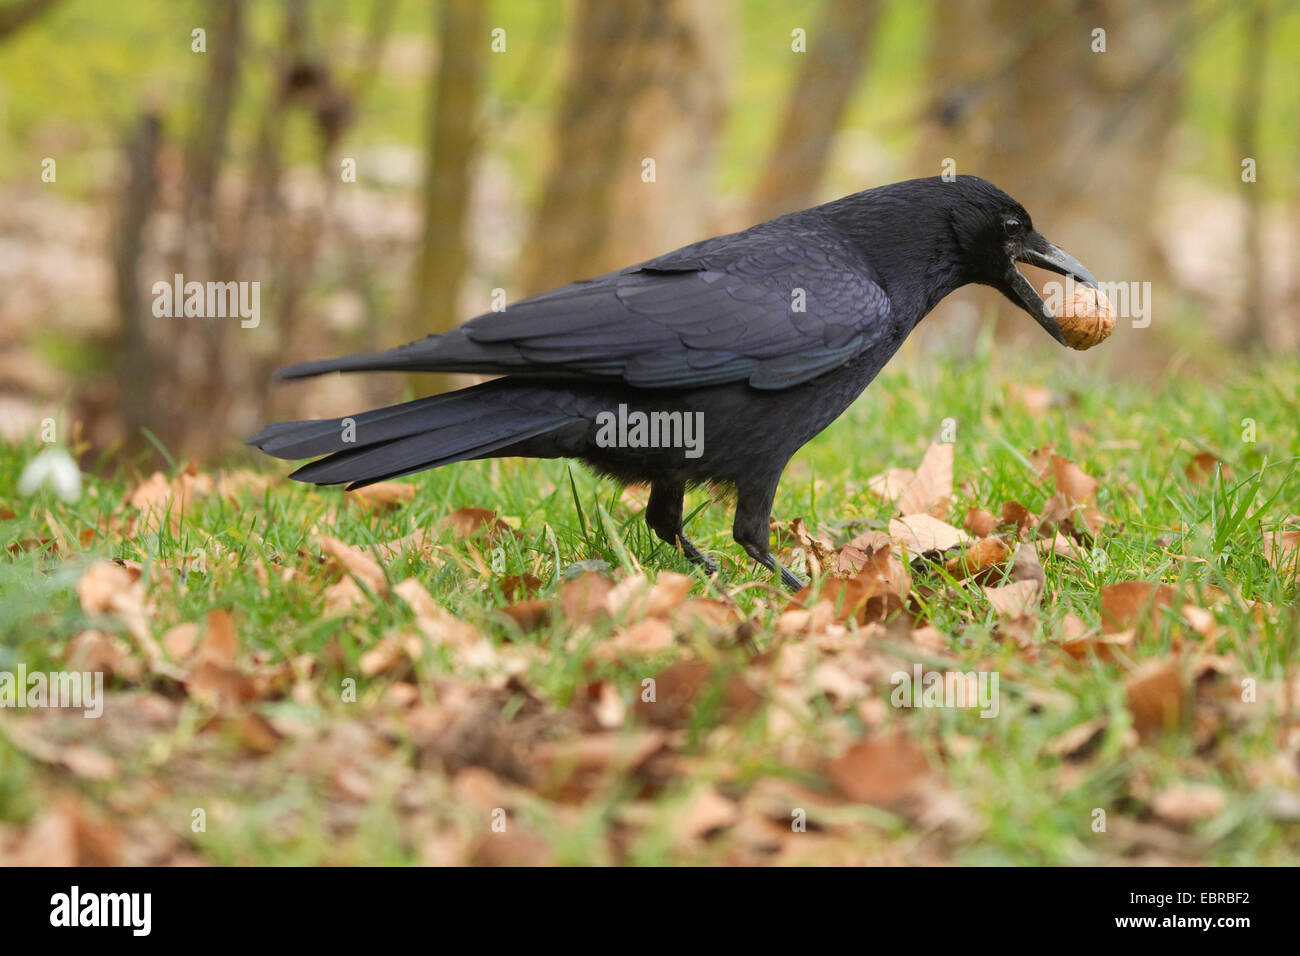 Corneille noire (Corvus corone, Corvus corone corone), au printemps dans une prairie avec une noix dans le projet de loi, l'Allemagne, Rhénanie du Nord-Westphalie Banque D'Images